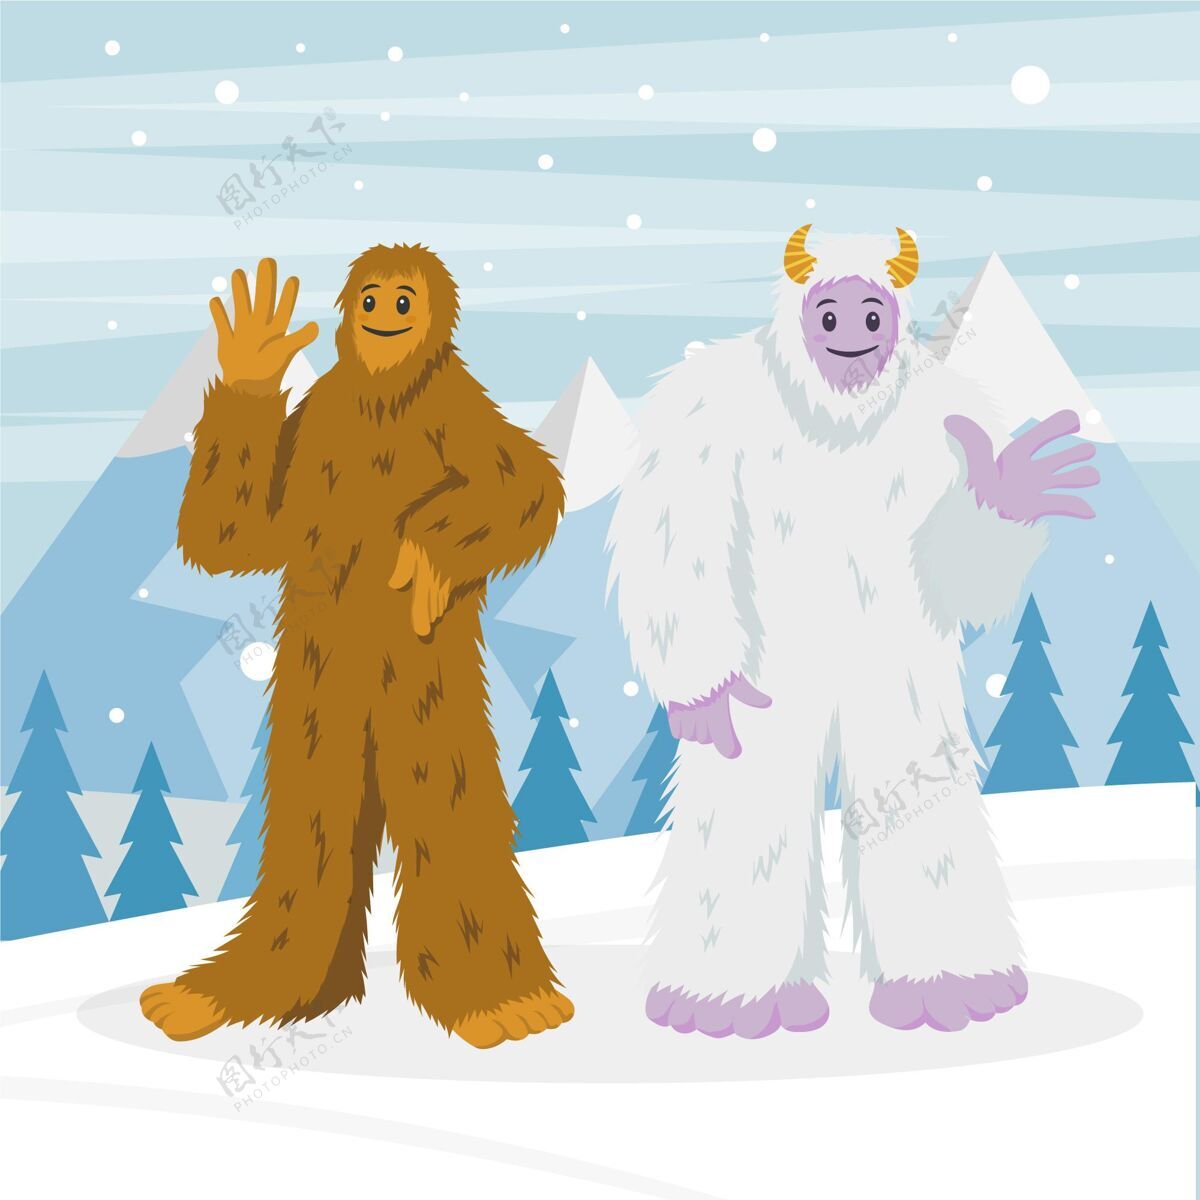 生物手绘大脚大脚怪和雪人可爱的雪人插图雪人吓坏了吓人